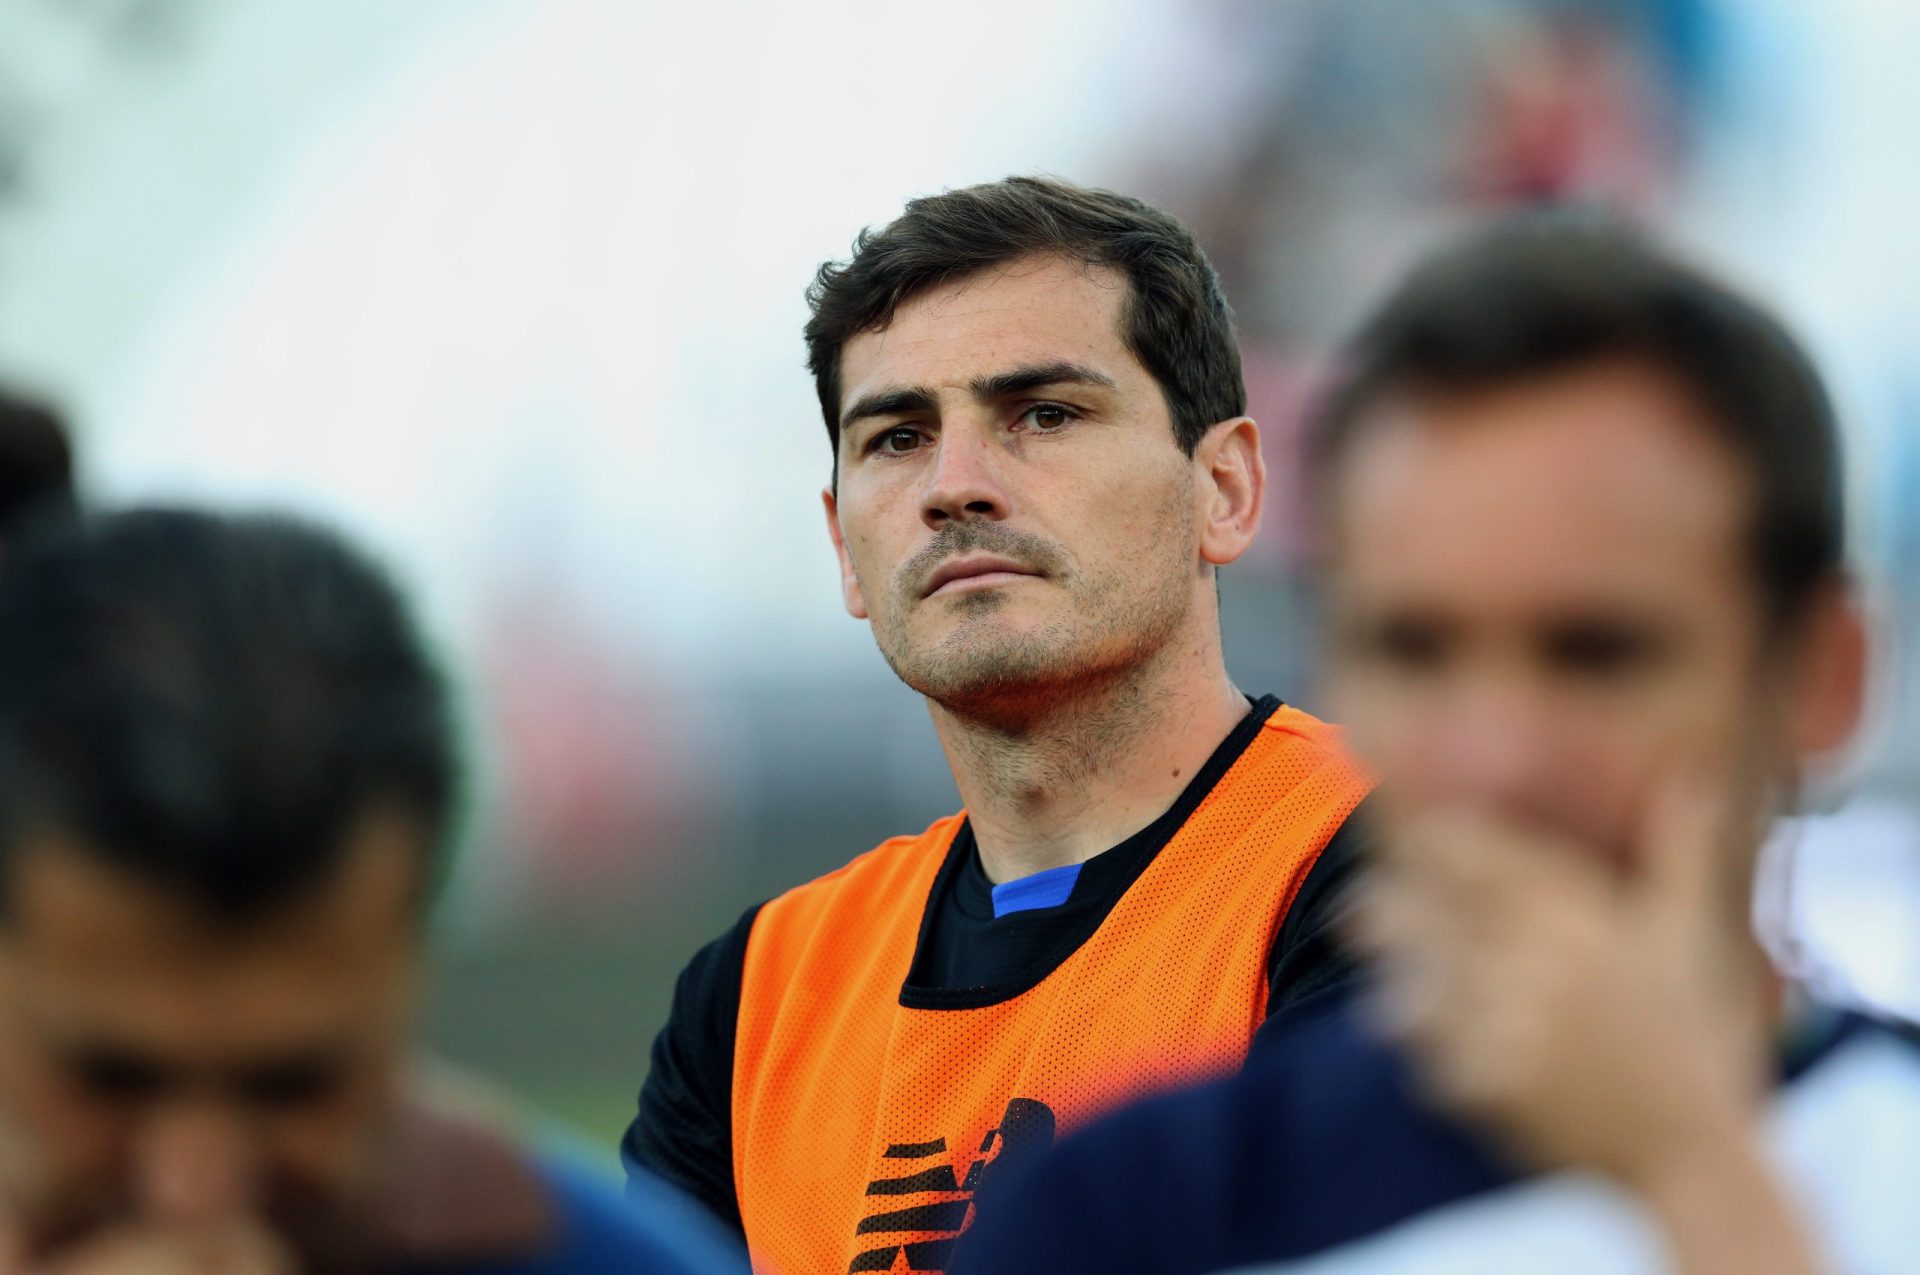 Casillas responde a jornalista nas redes sociais: “Não sejas tão pateta”